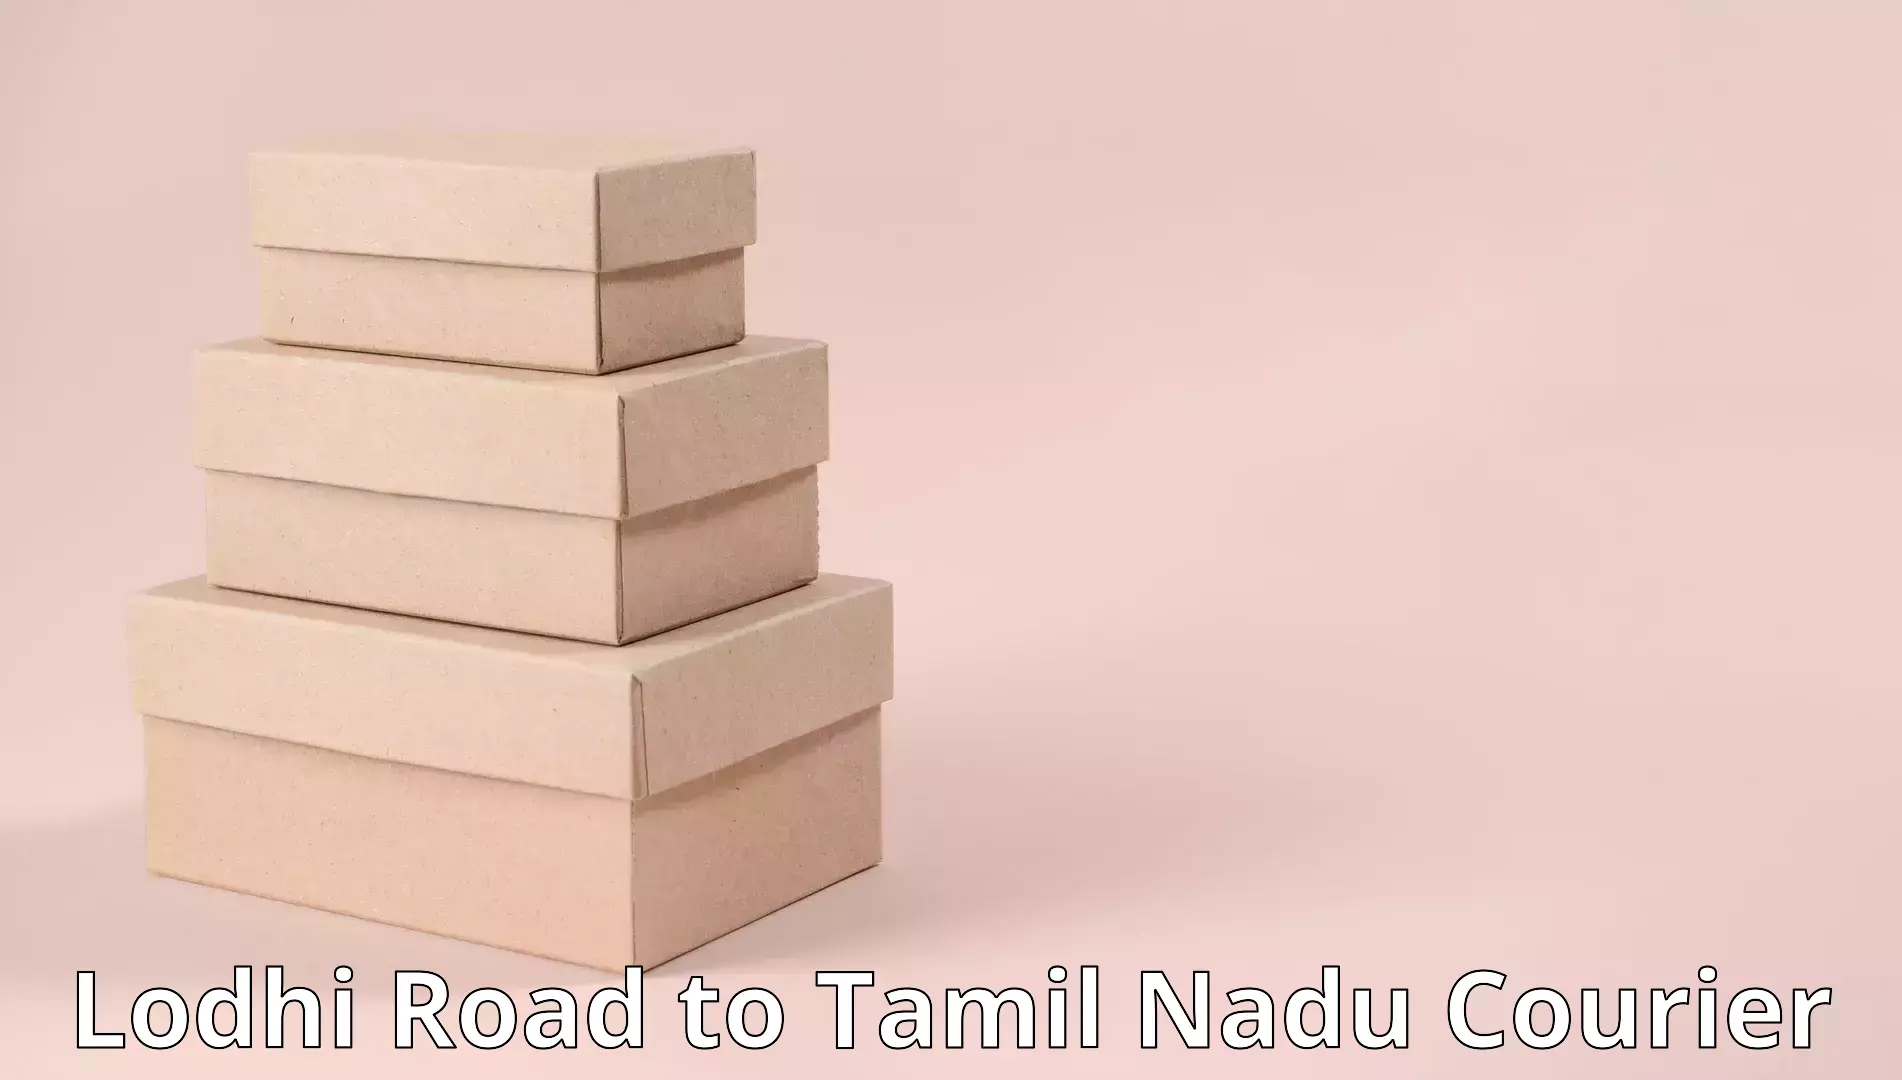 Custom furniture transport in Lodhi Road to Sankarapuram